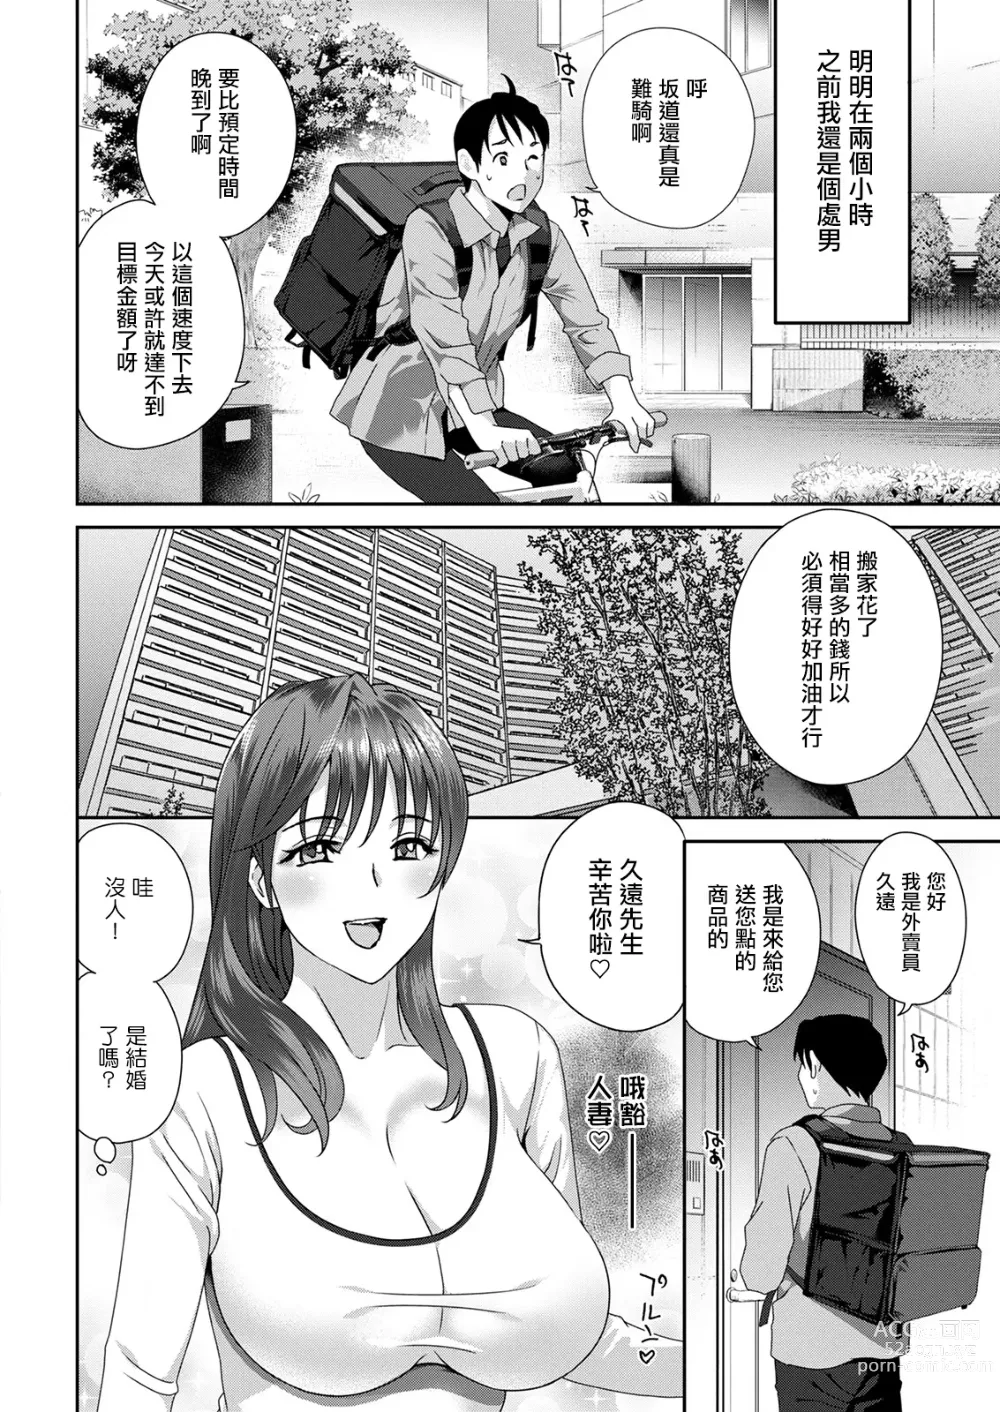 Page 6 of manga Hyoui!  Nupunupu Ana Ijime Ch. 1